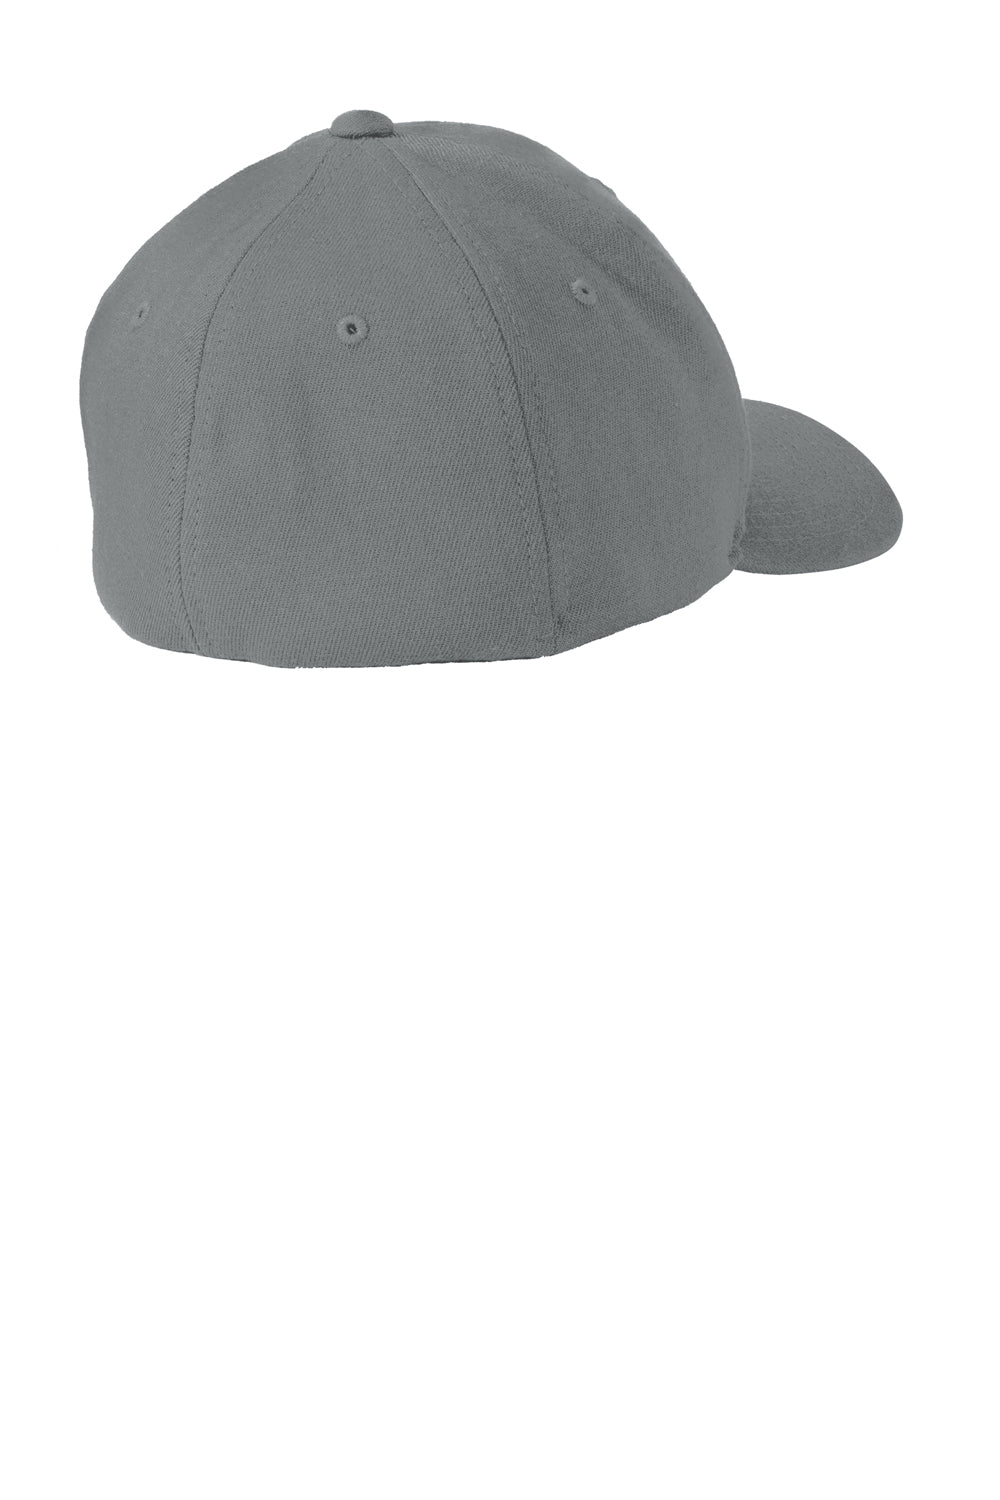 Port Authority C928 Flexfit Wool Blend Hat Grey Back